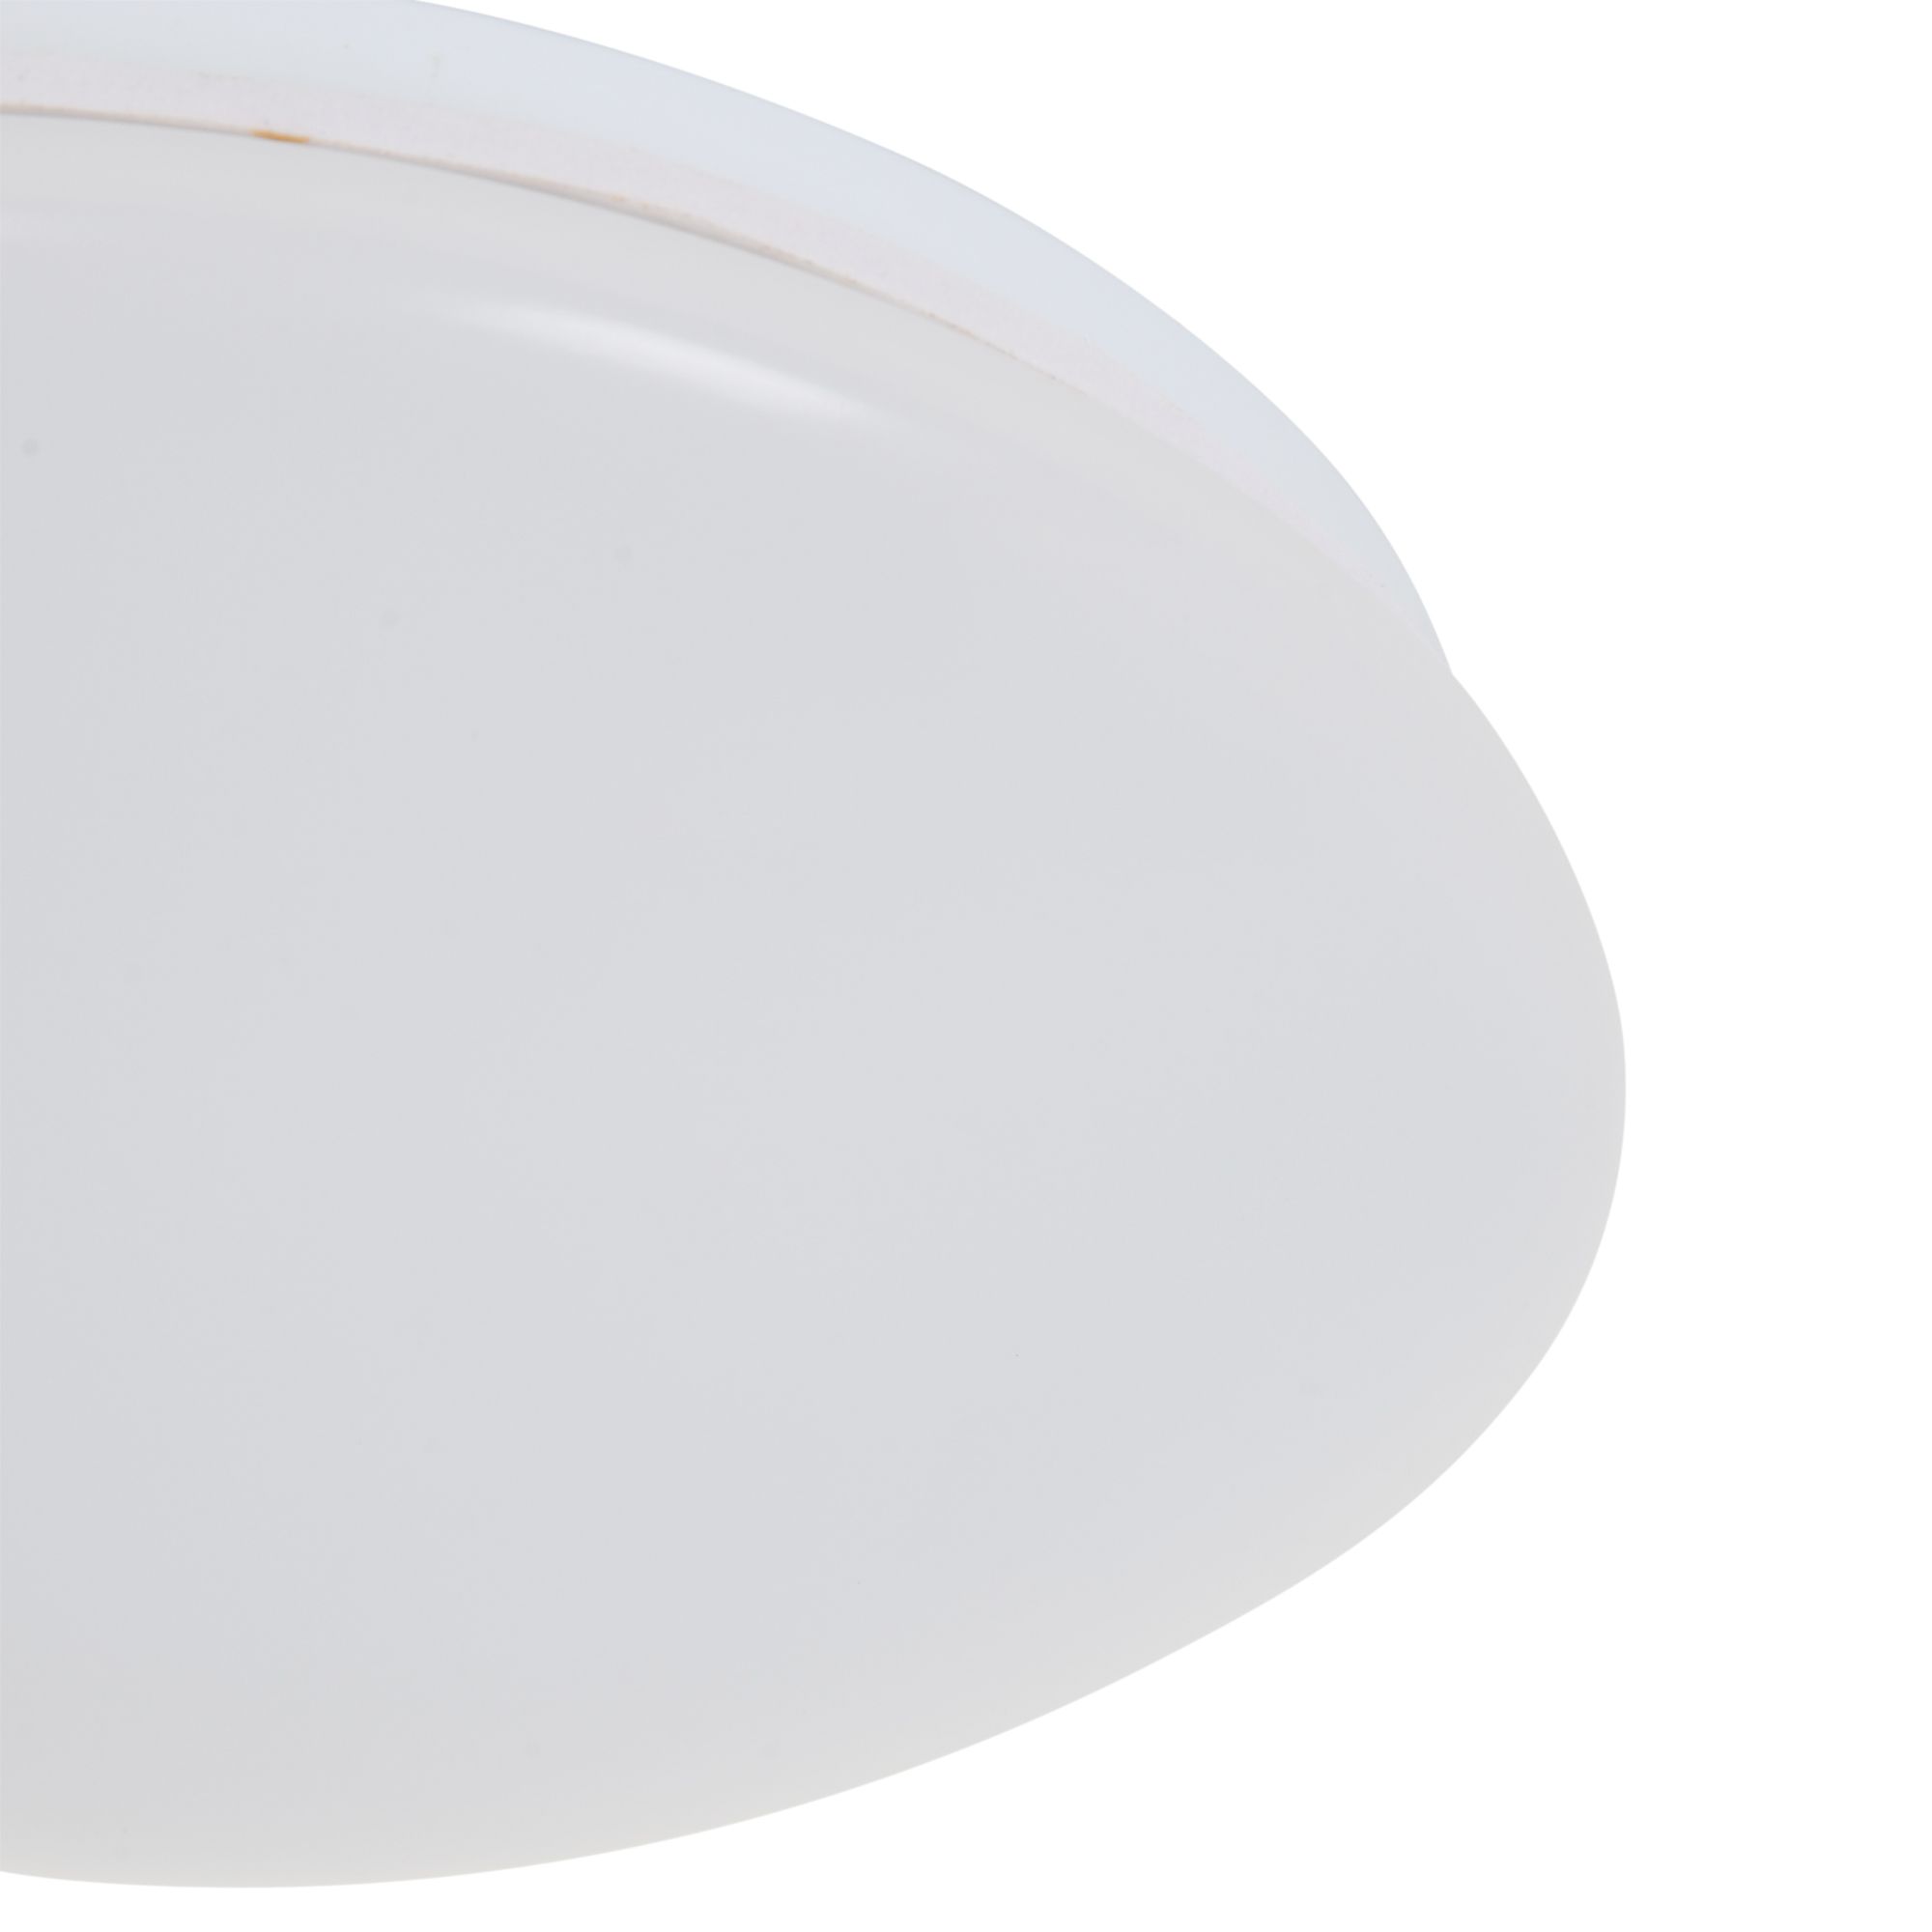 Domed Metal & plastic White Bathroom Ceiling light